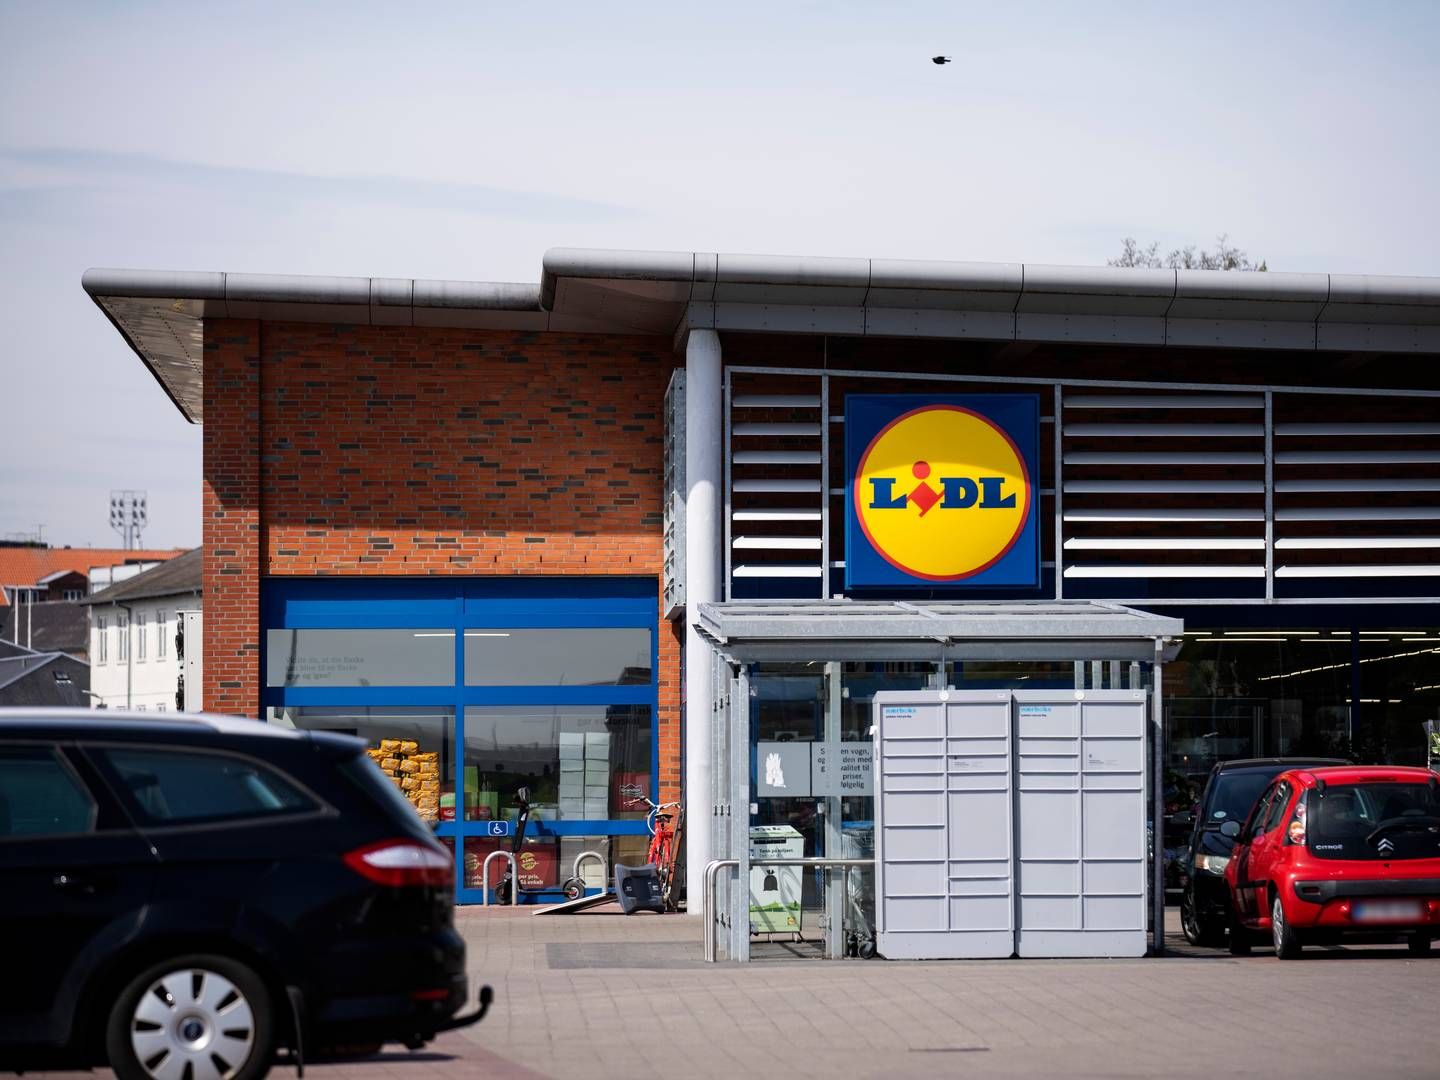 Lidl sigter mod 1.100 butikker i Storbritannien, hvilket er omkring 150 butikker mere end det nuværende antal. | Foto: Bo Amstrup